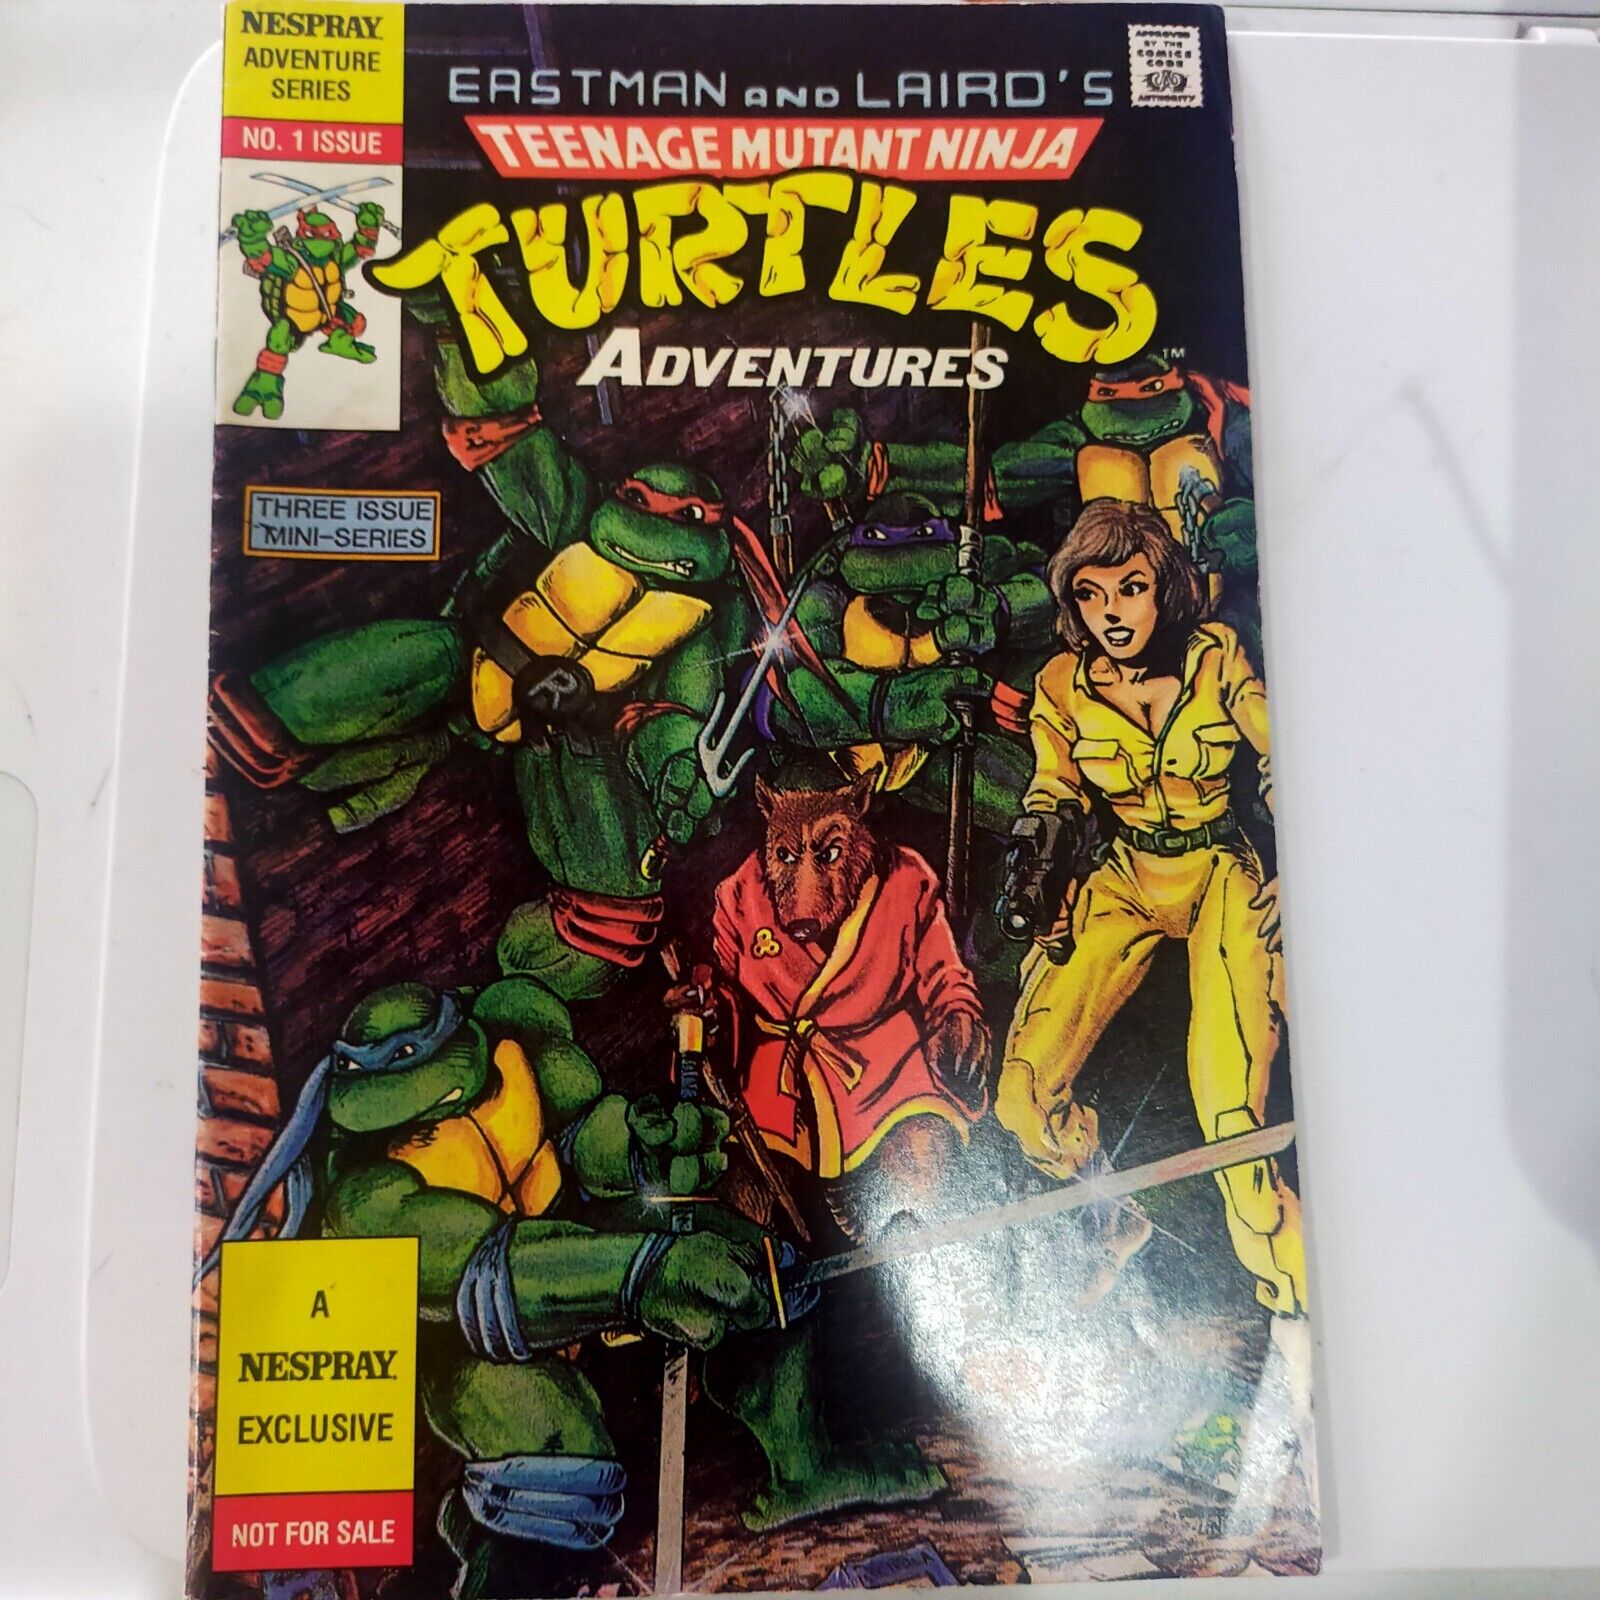 RARE Teenage Mutant Ninja Turtles Adventures #1 NESPRAY Adventure Series